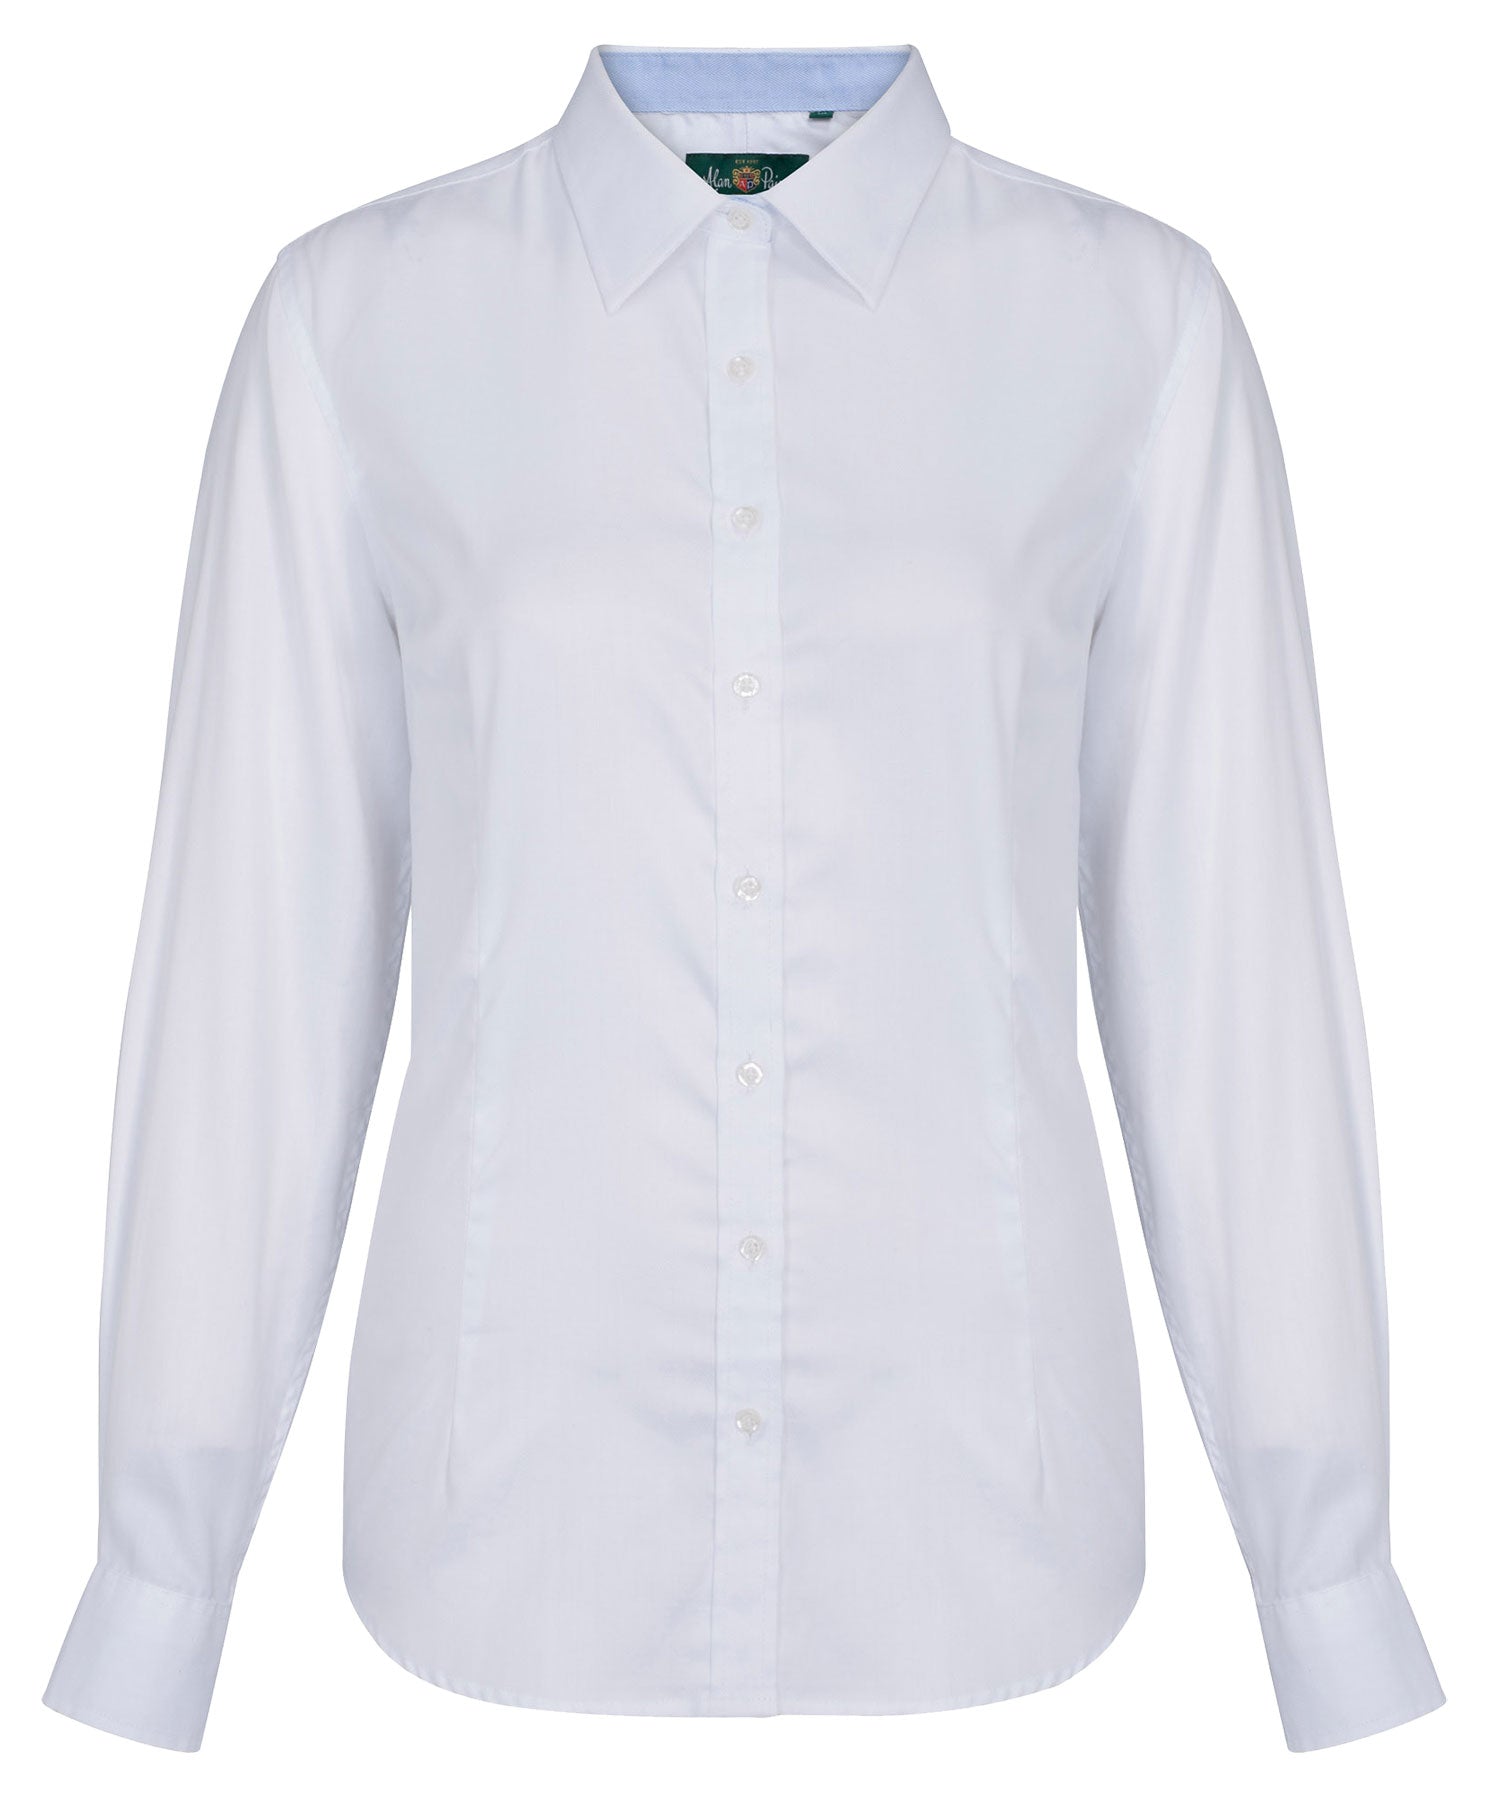 White Alan Paine Bromford Ladies Shirt  